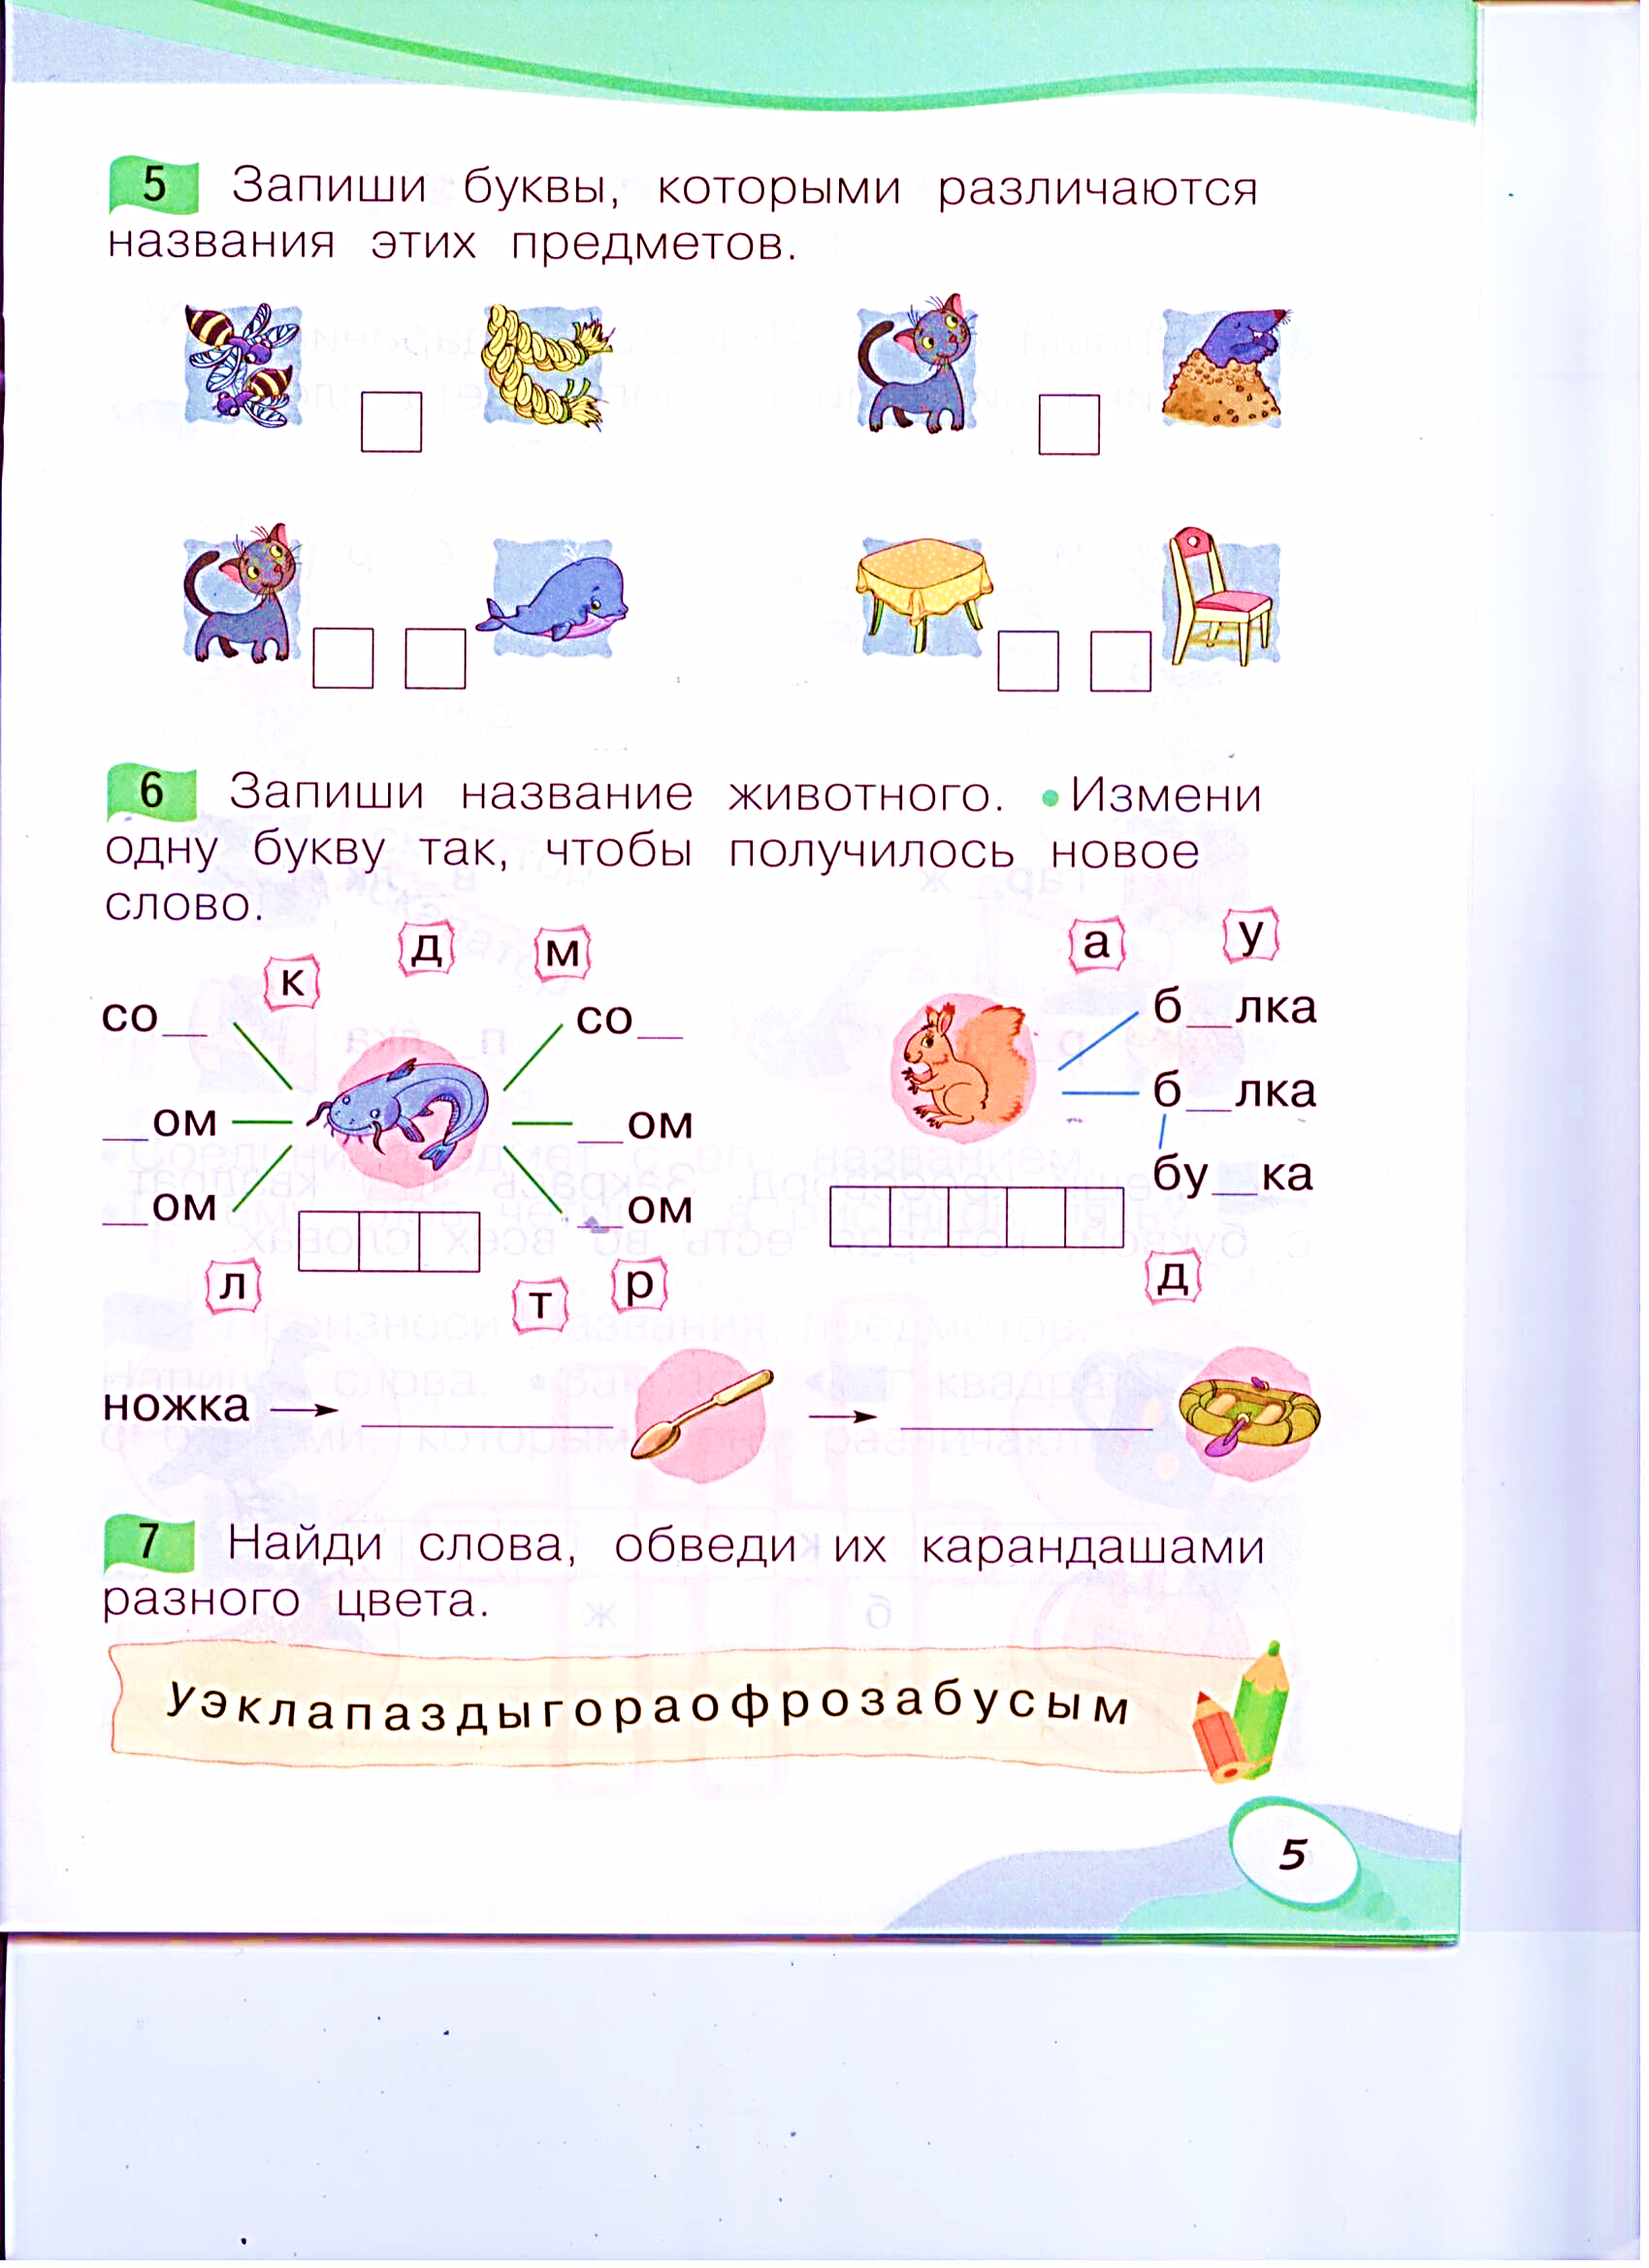 Дидактический материал к урокам обучения грамоте (1 класс)